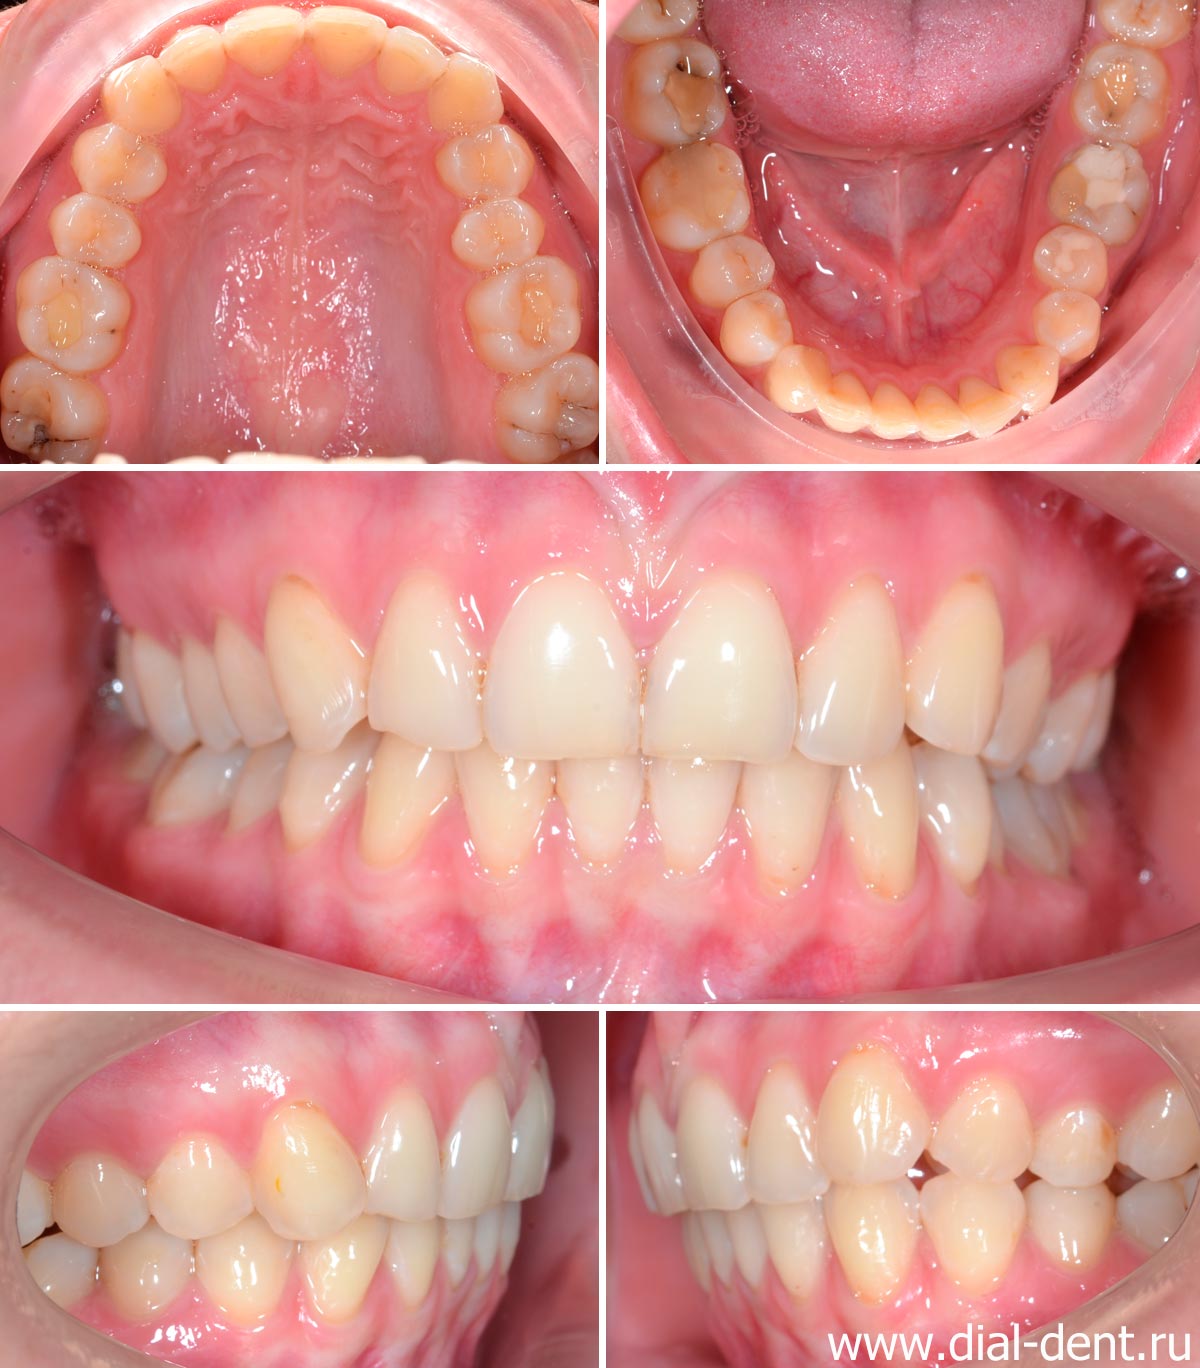 фотографии зубов для диагностики и составления плана лечения